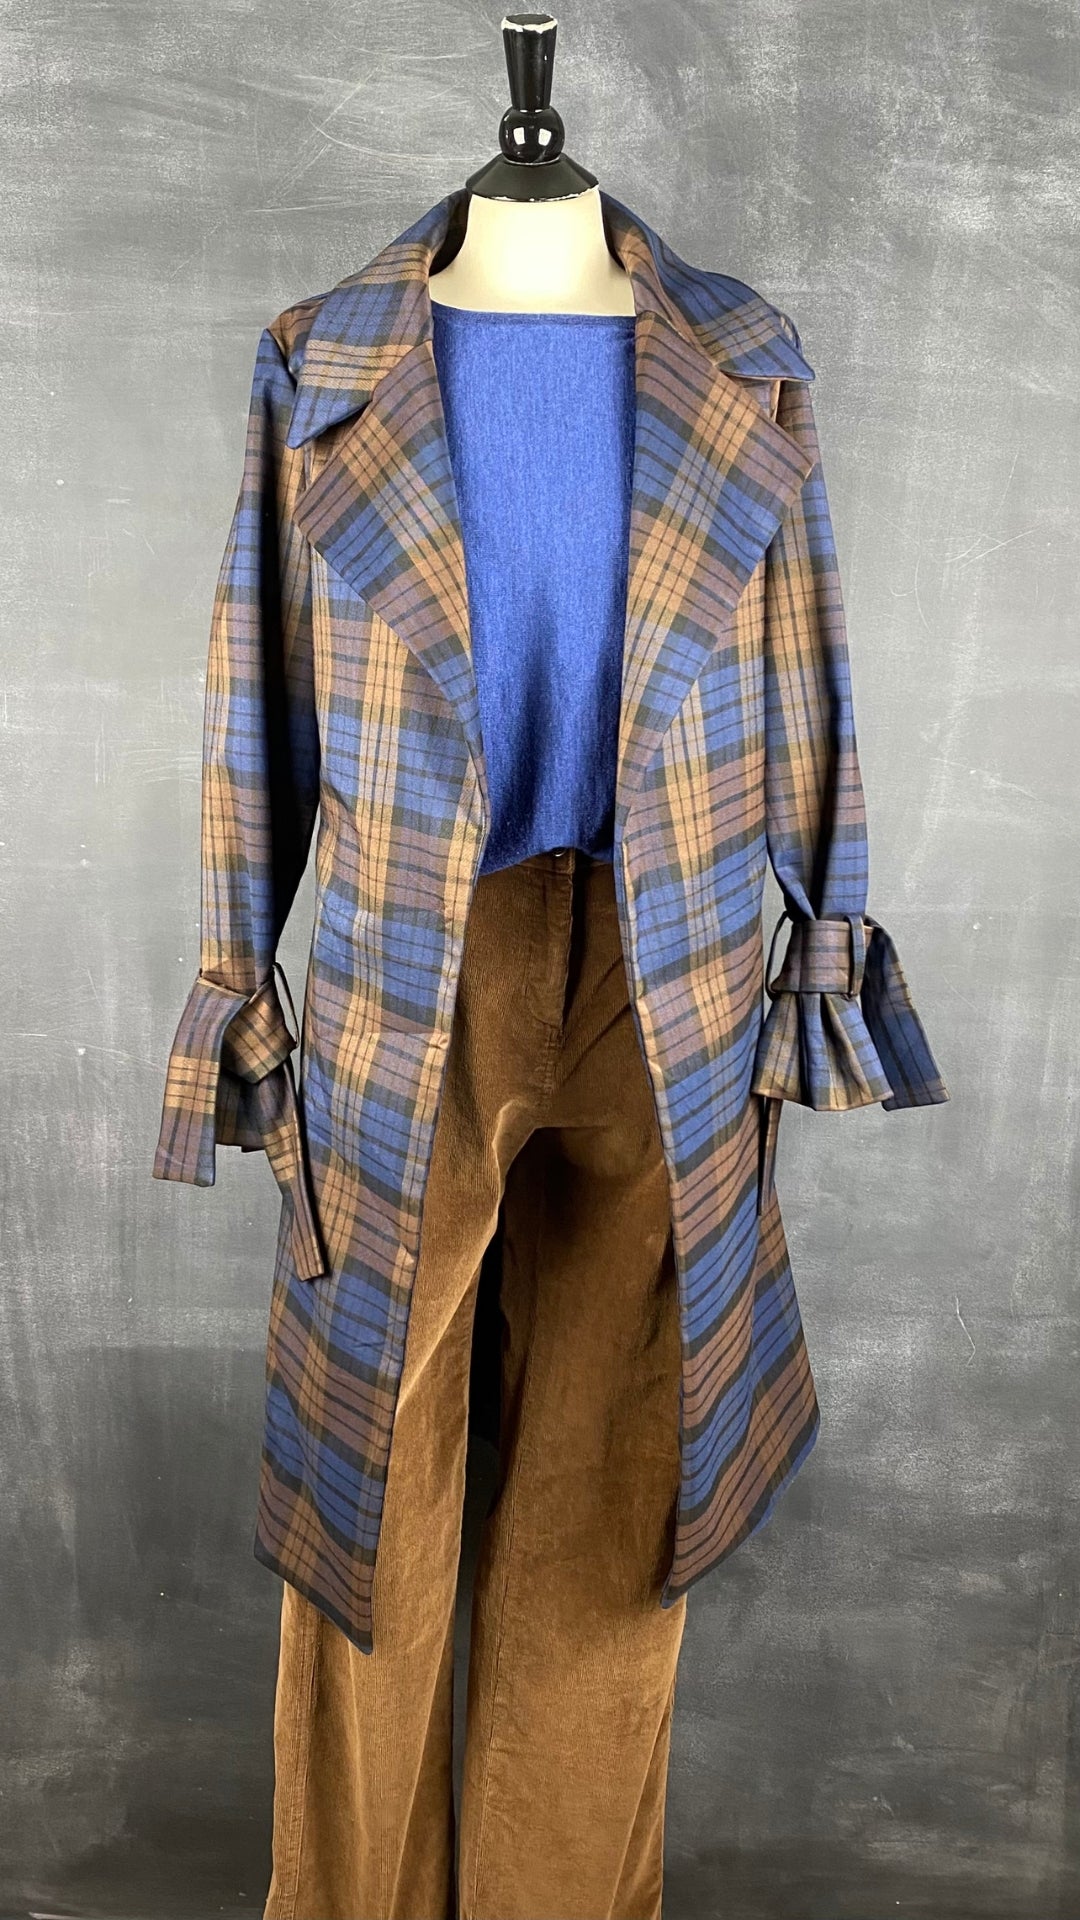 Pantalon fin velours côtelé acajou Woolrich, taille 6. Vue de l'agencement avec tricot laine de mérinos bleu et le manteau style trench à carreaux.